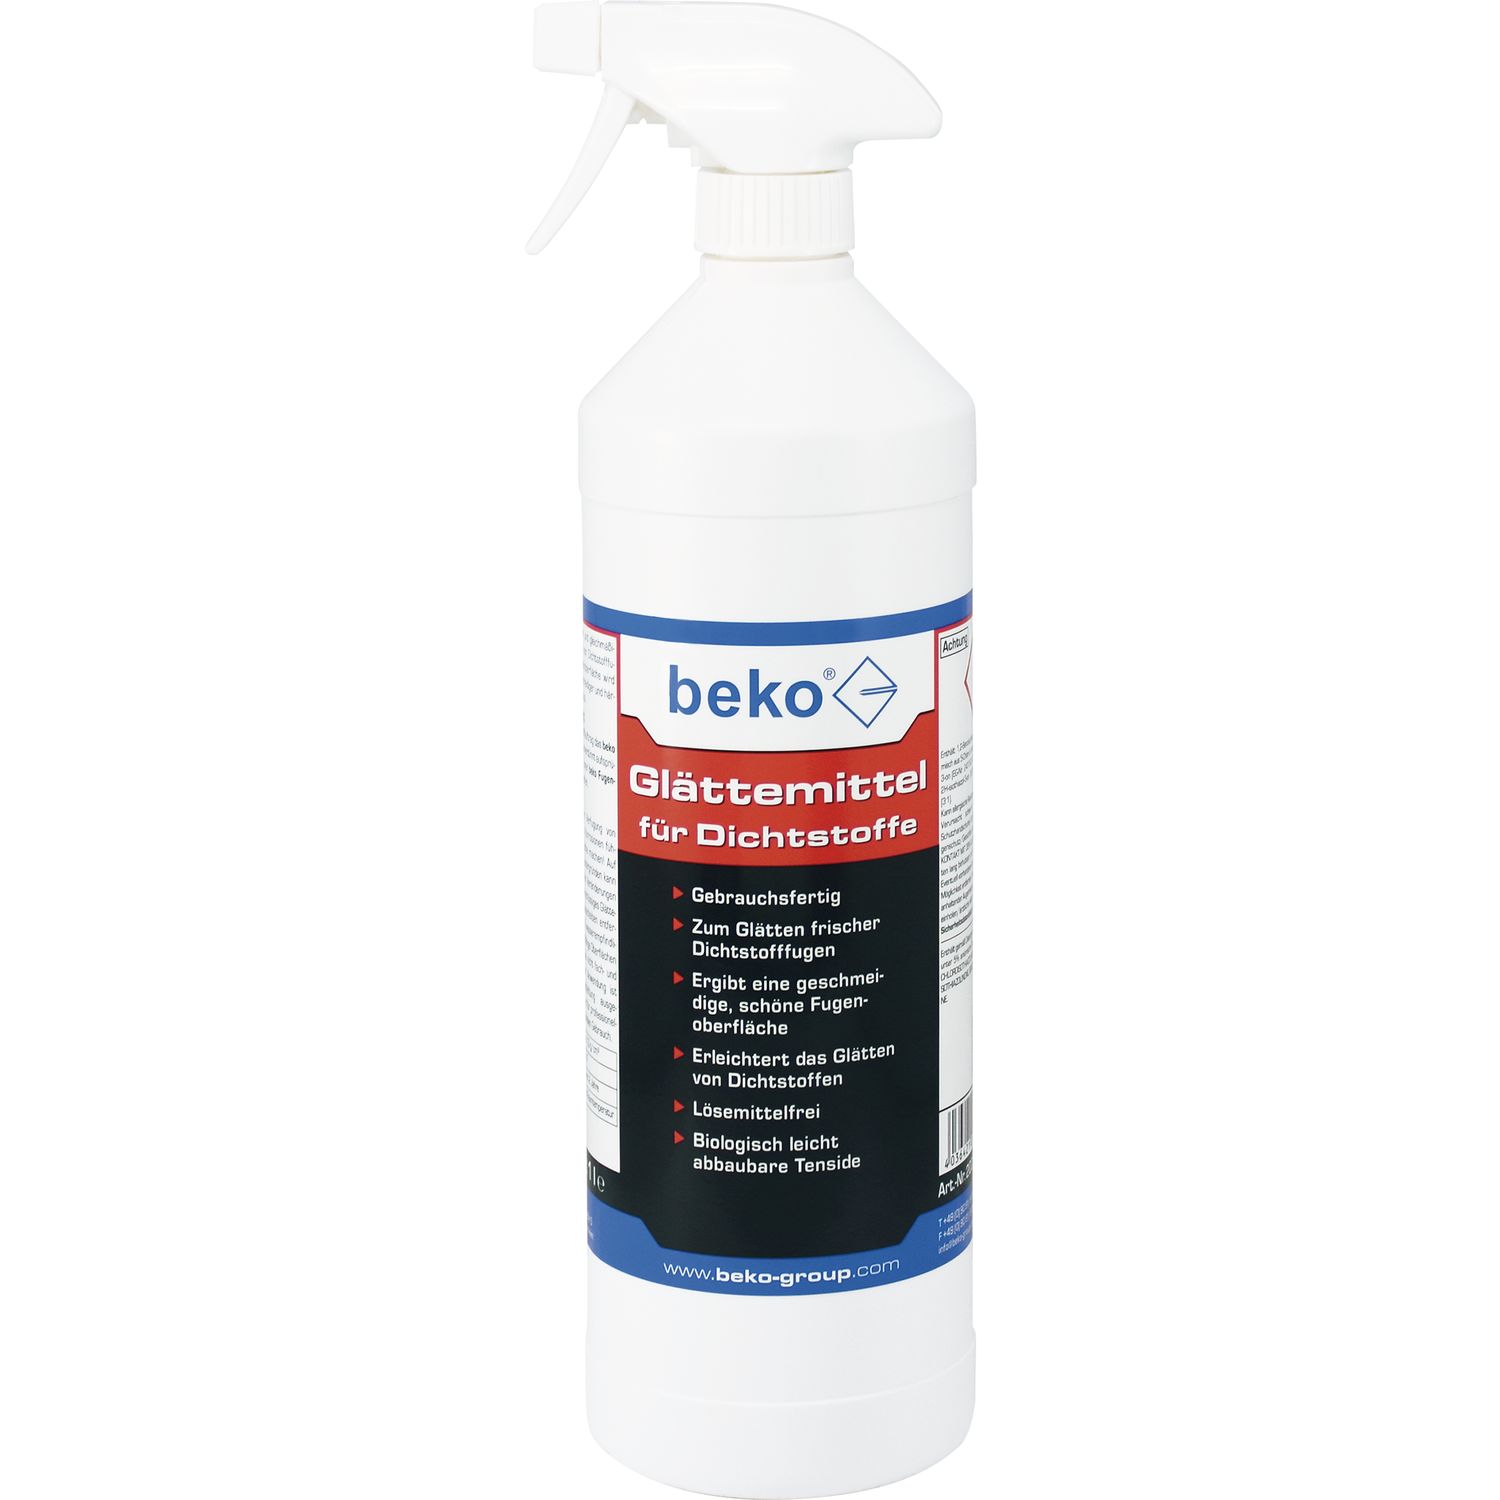 BEKO Glättemittel Spray für Dichstoffe, 1 L